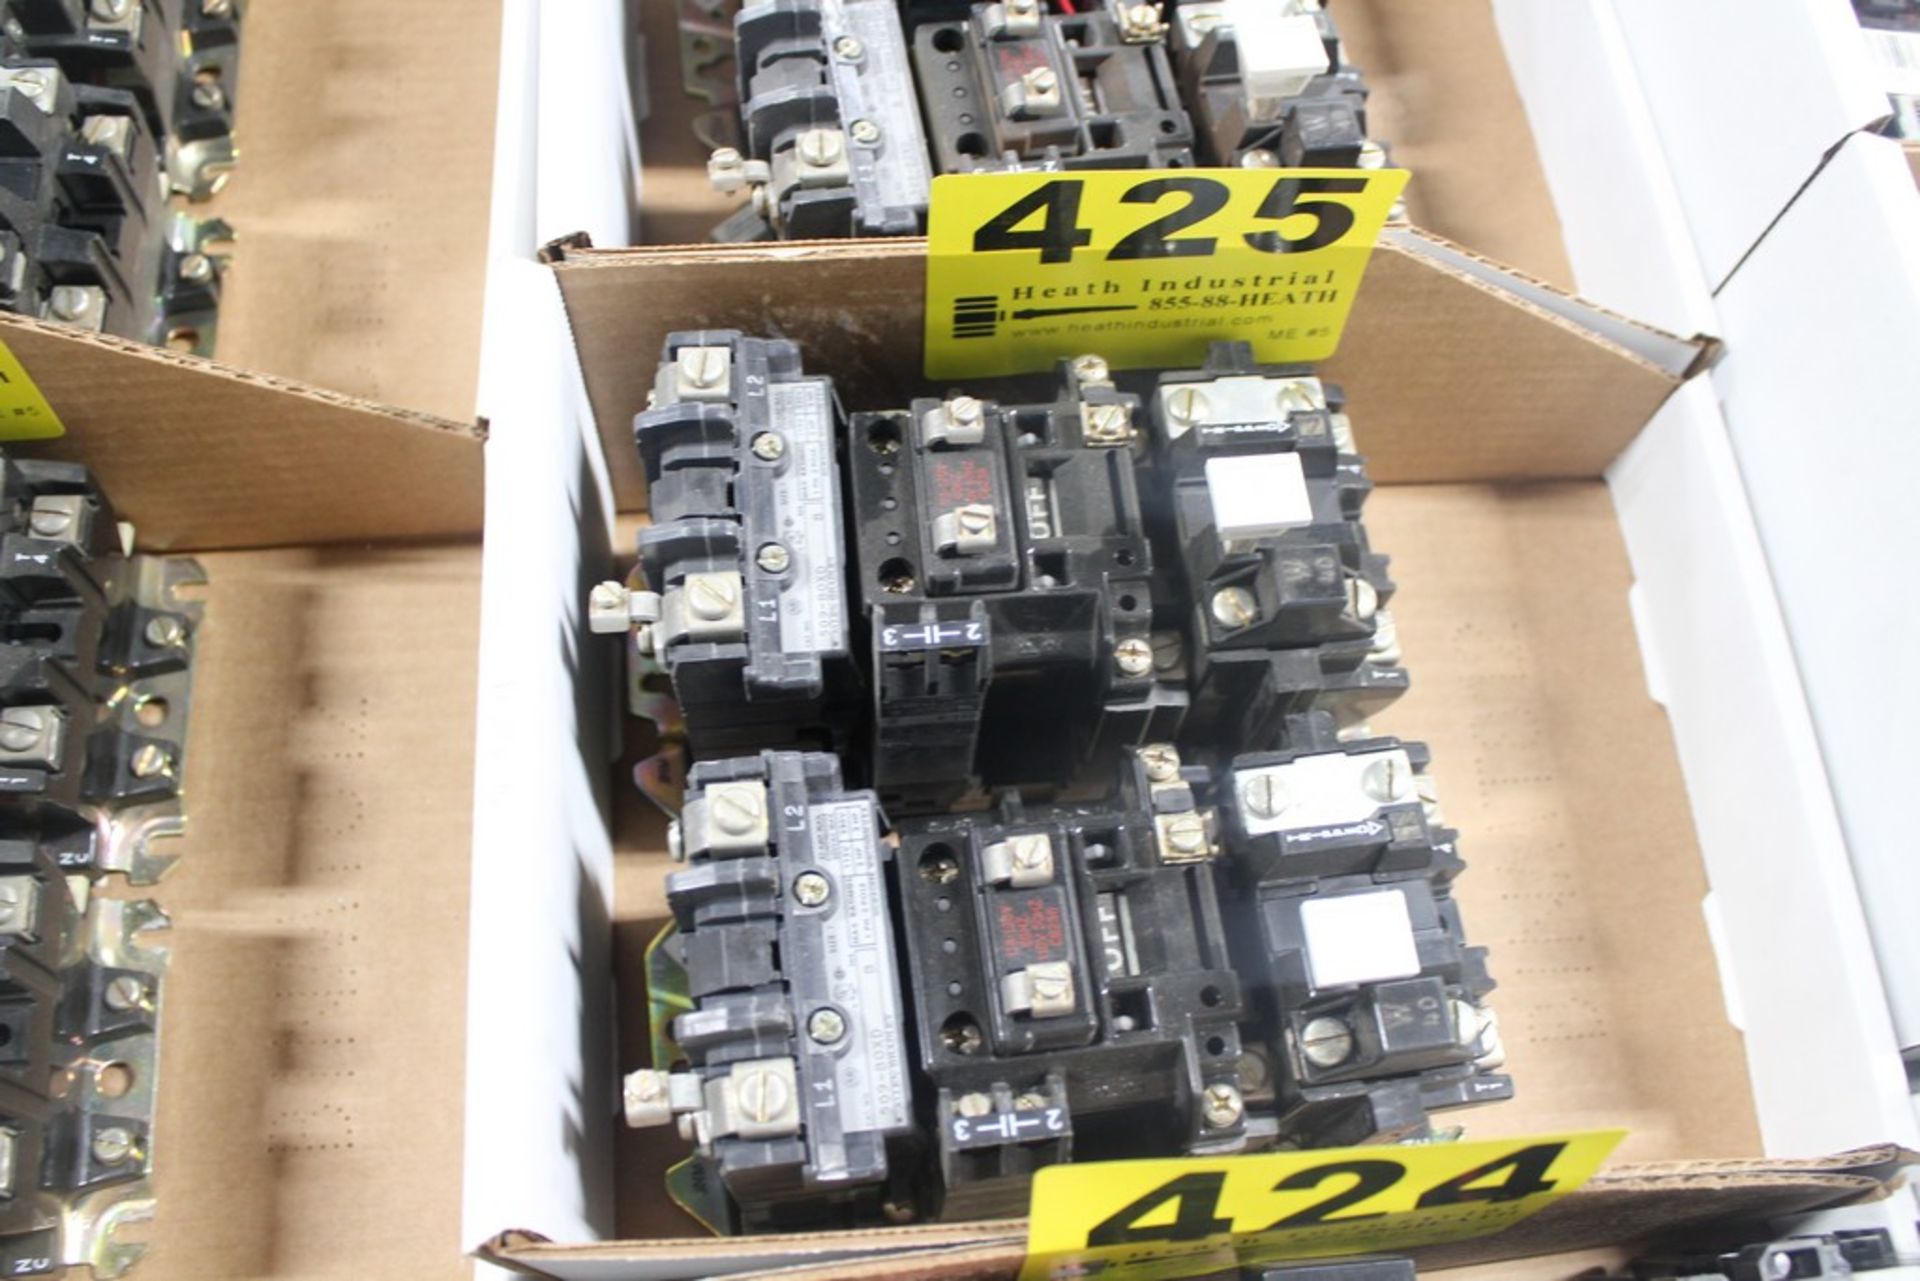 (2) ALLEN-BRADLEY MODEL 509-BOXD, 595-A AND MODEL 42185-804-01 MOTOR STARTERS IN BOX